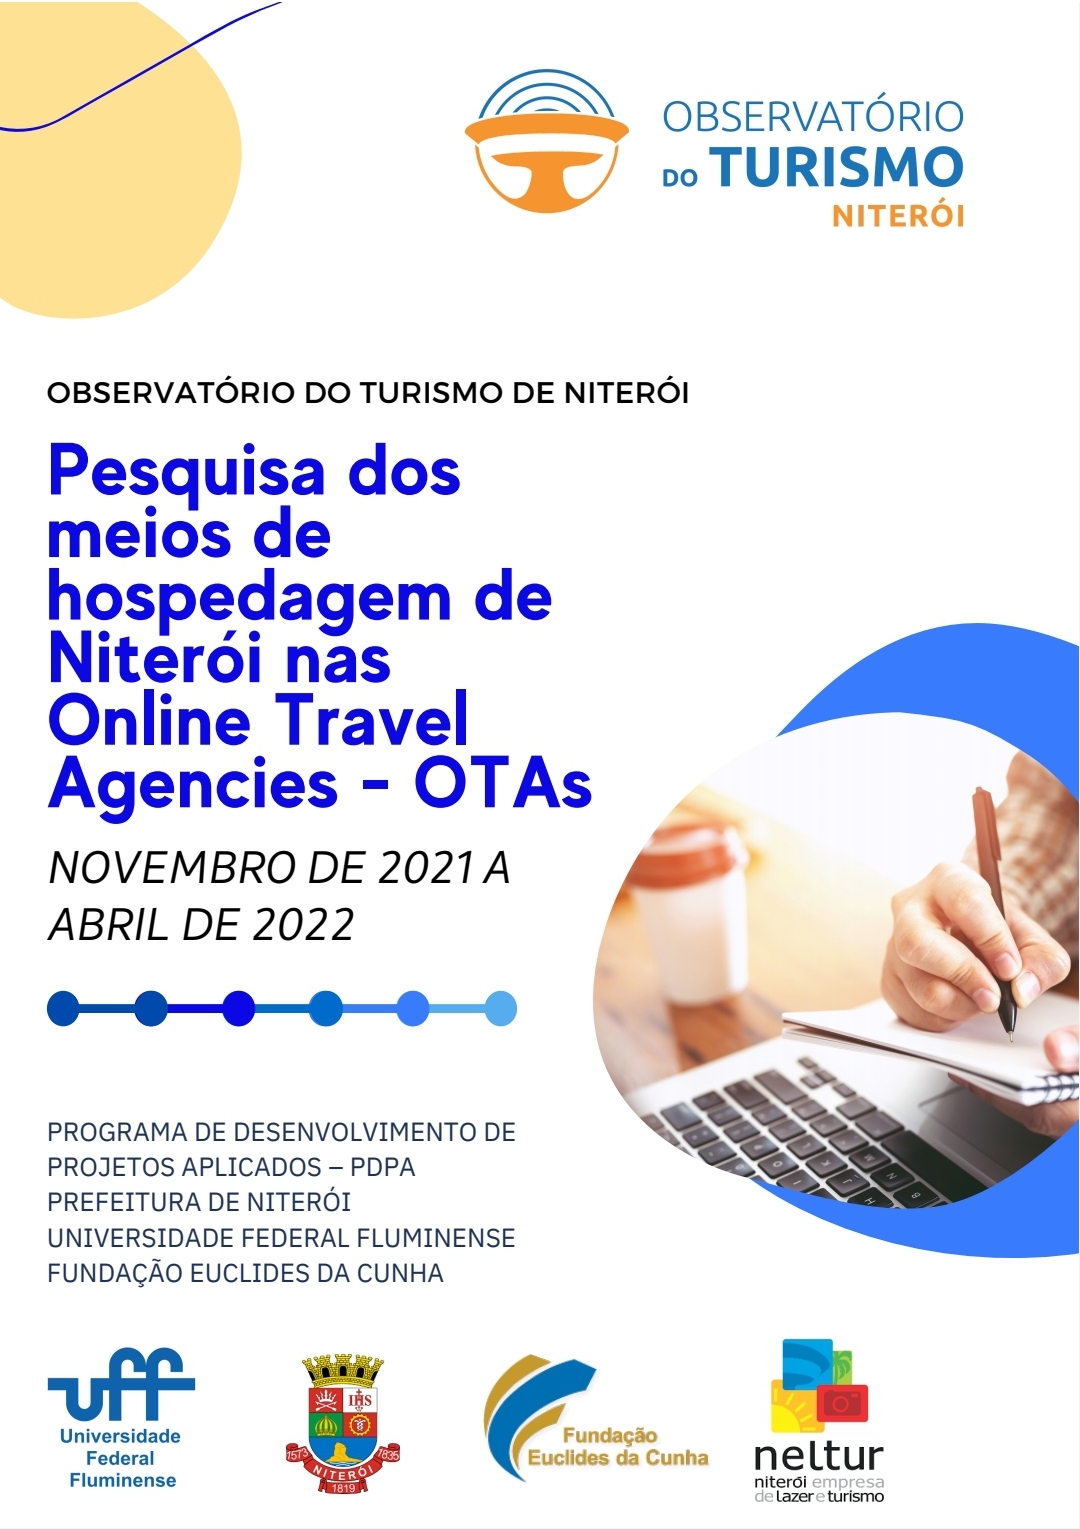 Pesquisa dos meios de hospedagem de Niterói nas Online Travel Agencies – OTAs  (NOVEMBRO DE 2021 A ABRIL DE 2022)